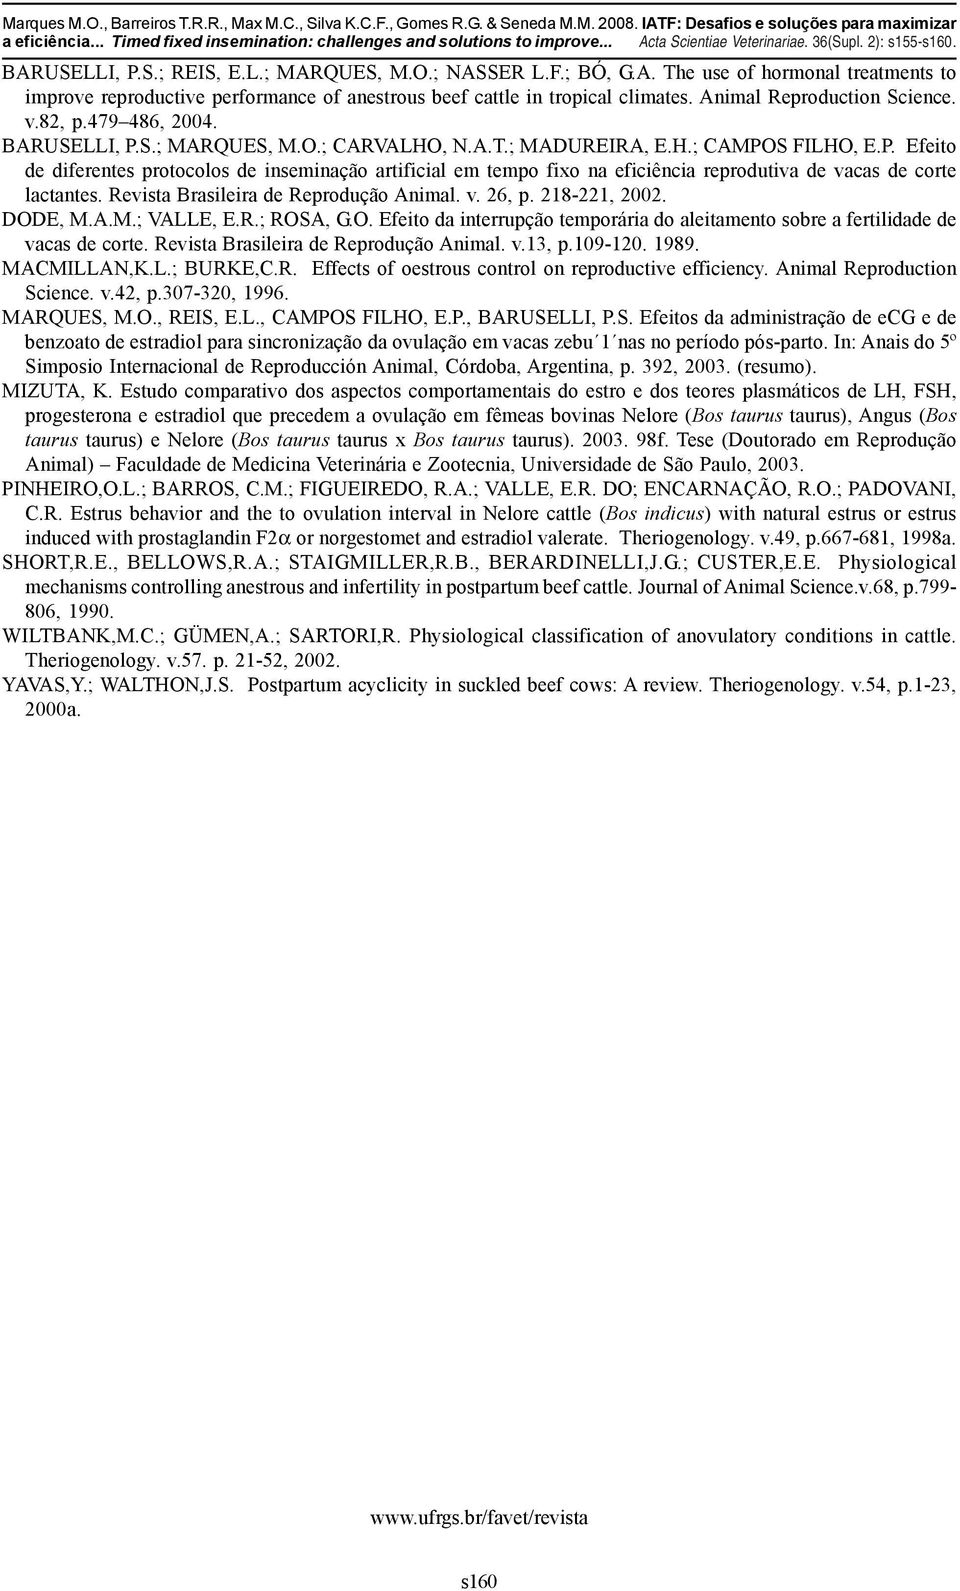 Animal Reproduction Science. v.82, p.479 486, 2004. BARUSELLI, P.S.; MARQUES, M.O.; CARVALHO, N.A.T.; MADUREIRA, E.H.; CAMPOS FILHO, E.P. Efeito de diferentes protocolos de inseminação artificial em tempo fixo na eficiência reprodutiva de vacas de corte lactantes.